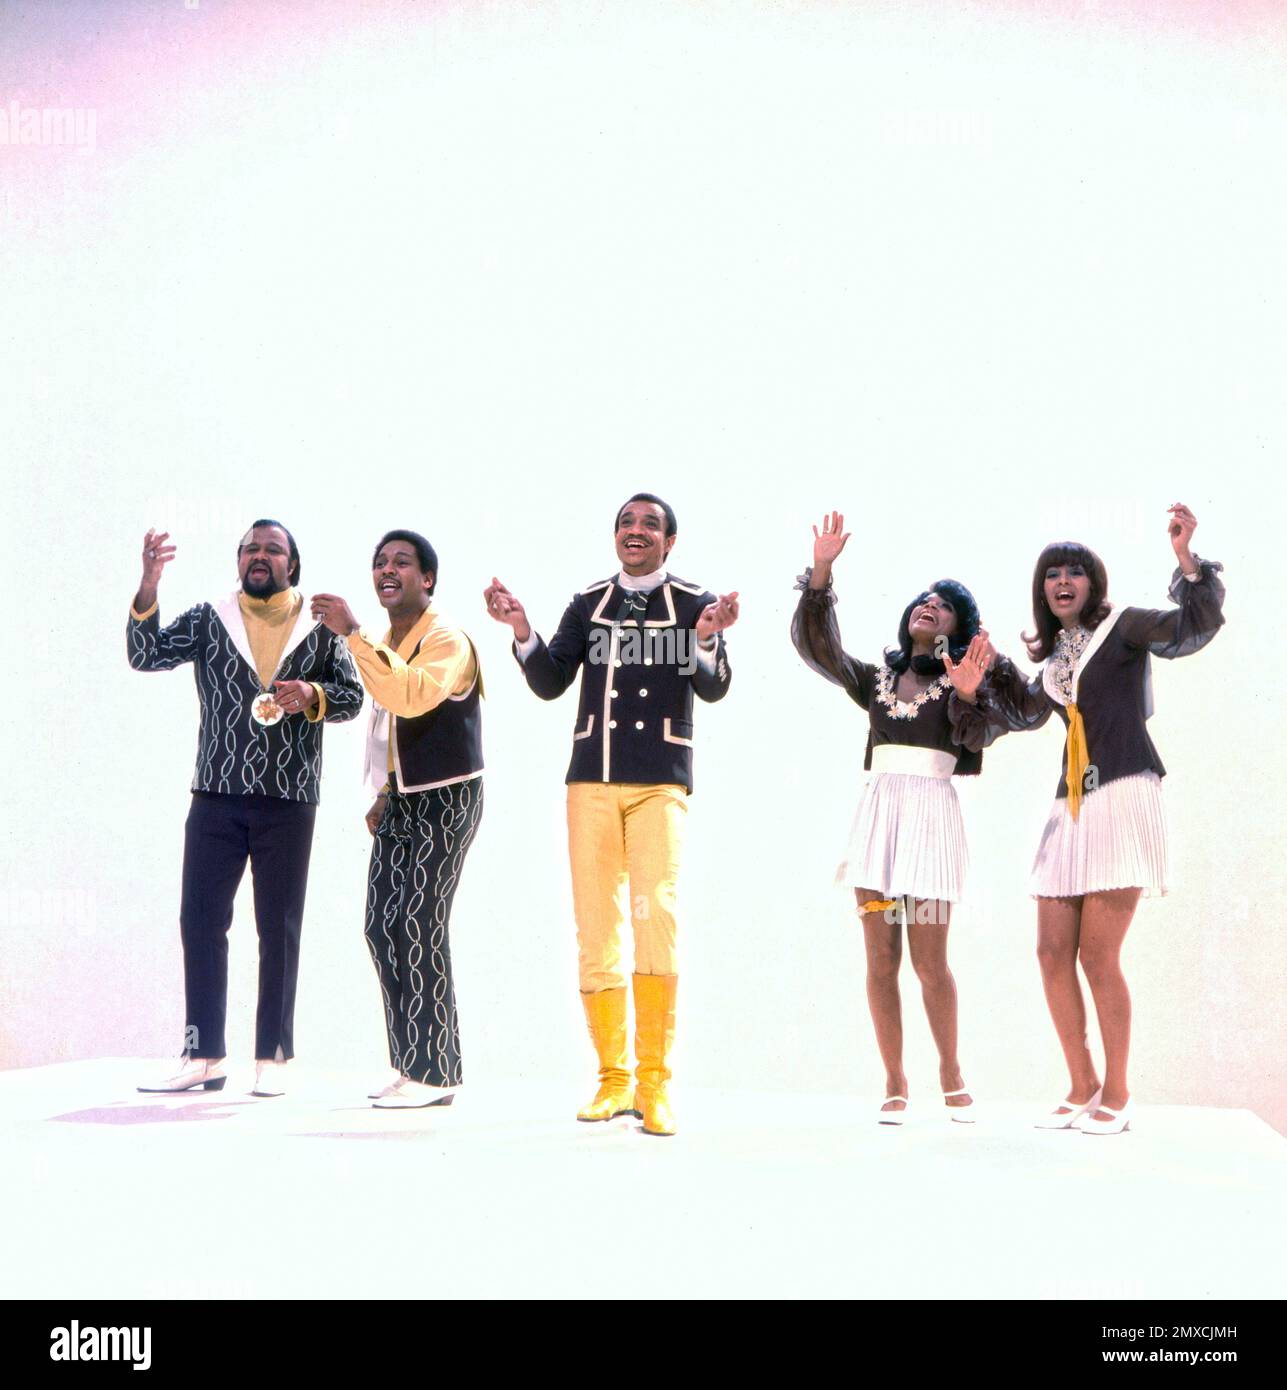 Die senta Berger Show, Personality-Show, Deutschland 1969, Regie: Heinz Liesendahl, mit dabei: The 5th Dimension, amerikanische Pop-Soul Gesangsgruppe Foto Stock